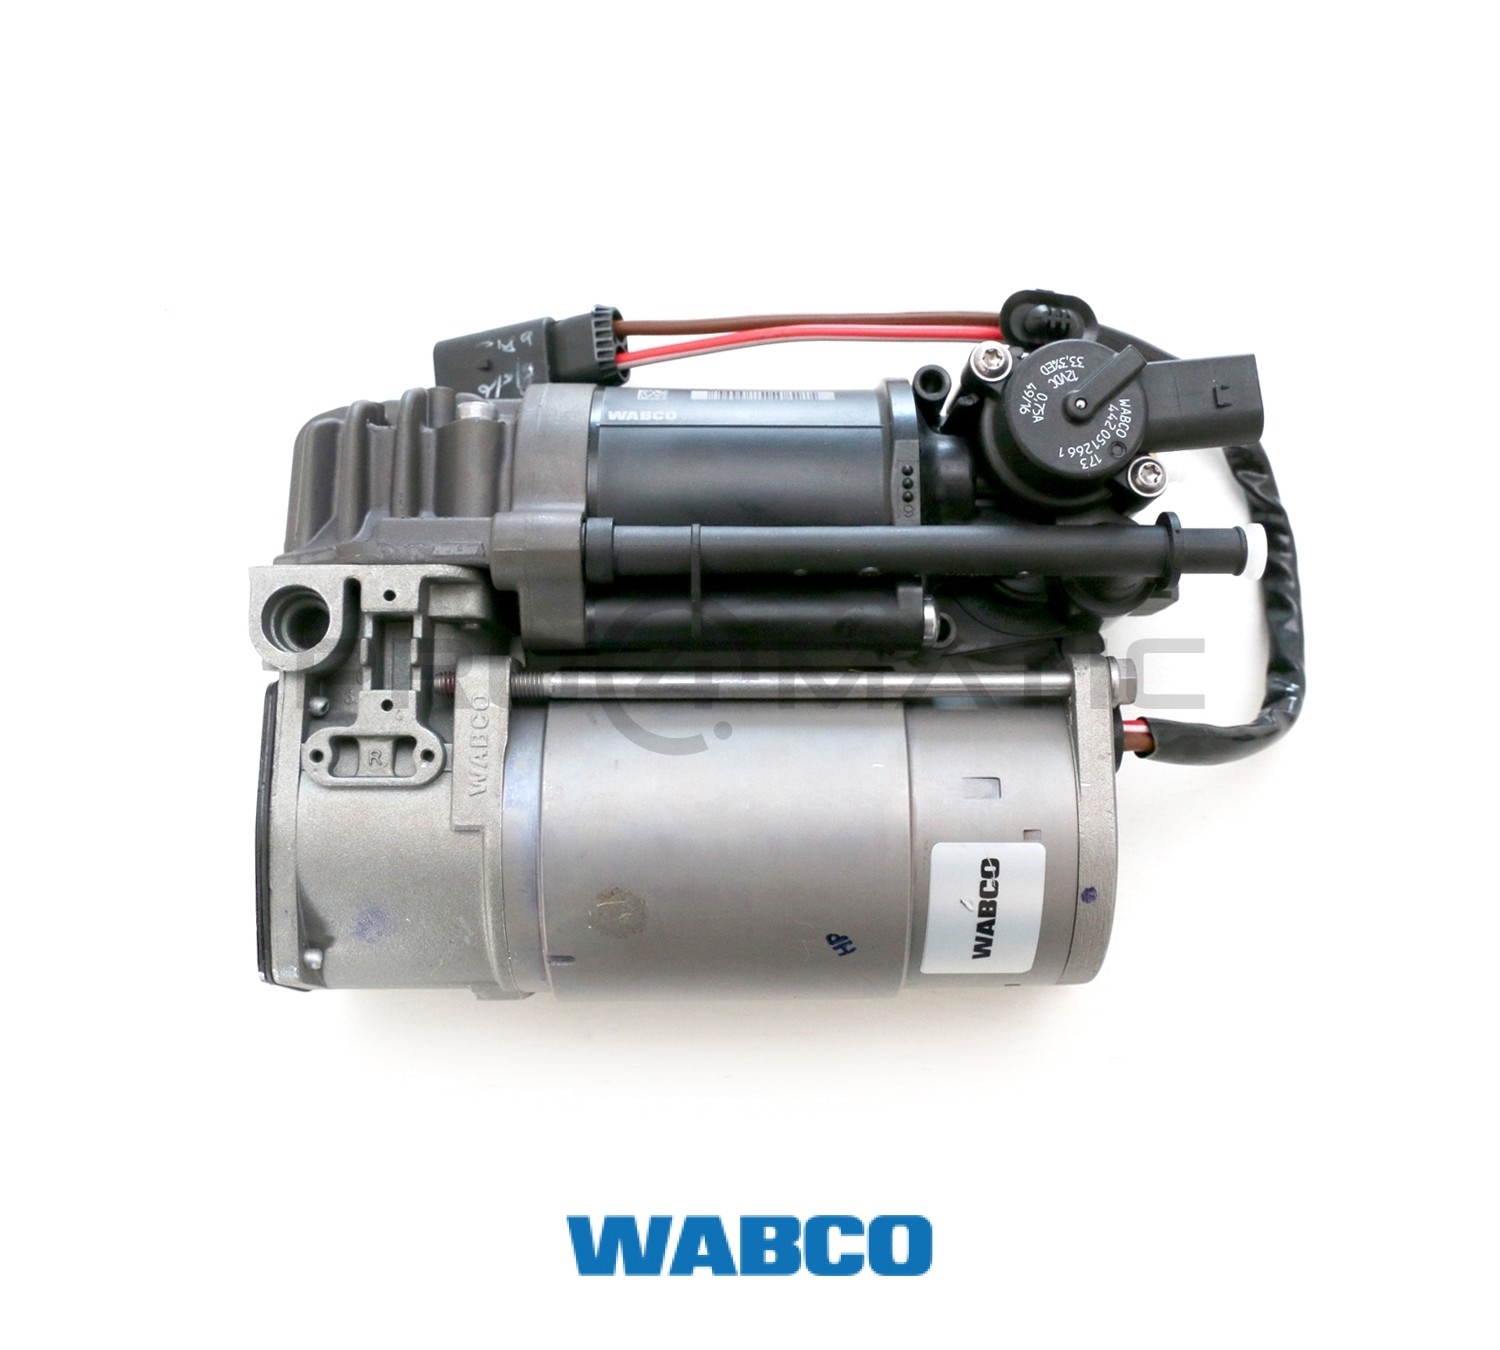 WABCO Kompressoren Luftfederung - 415 403 956 2 